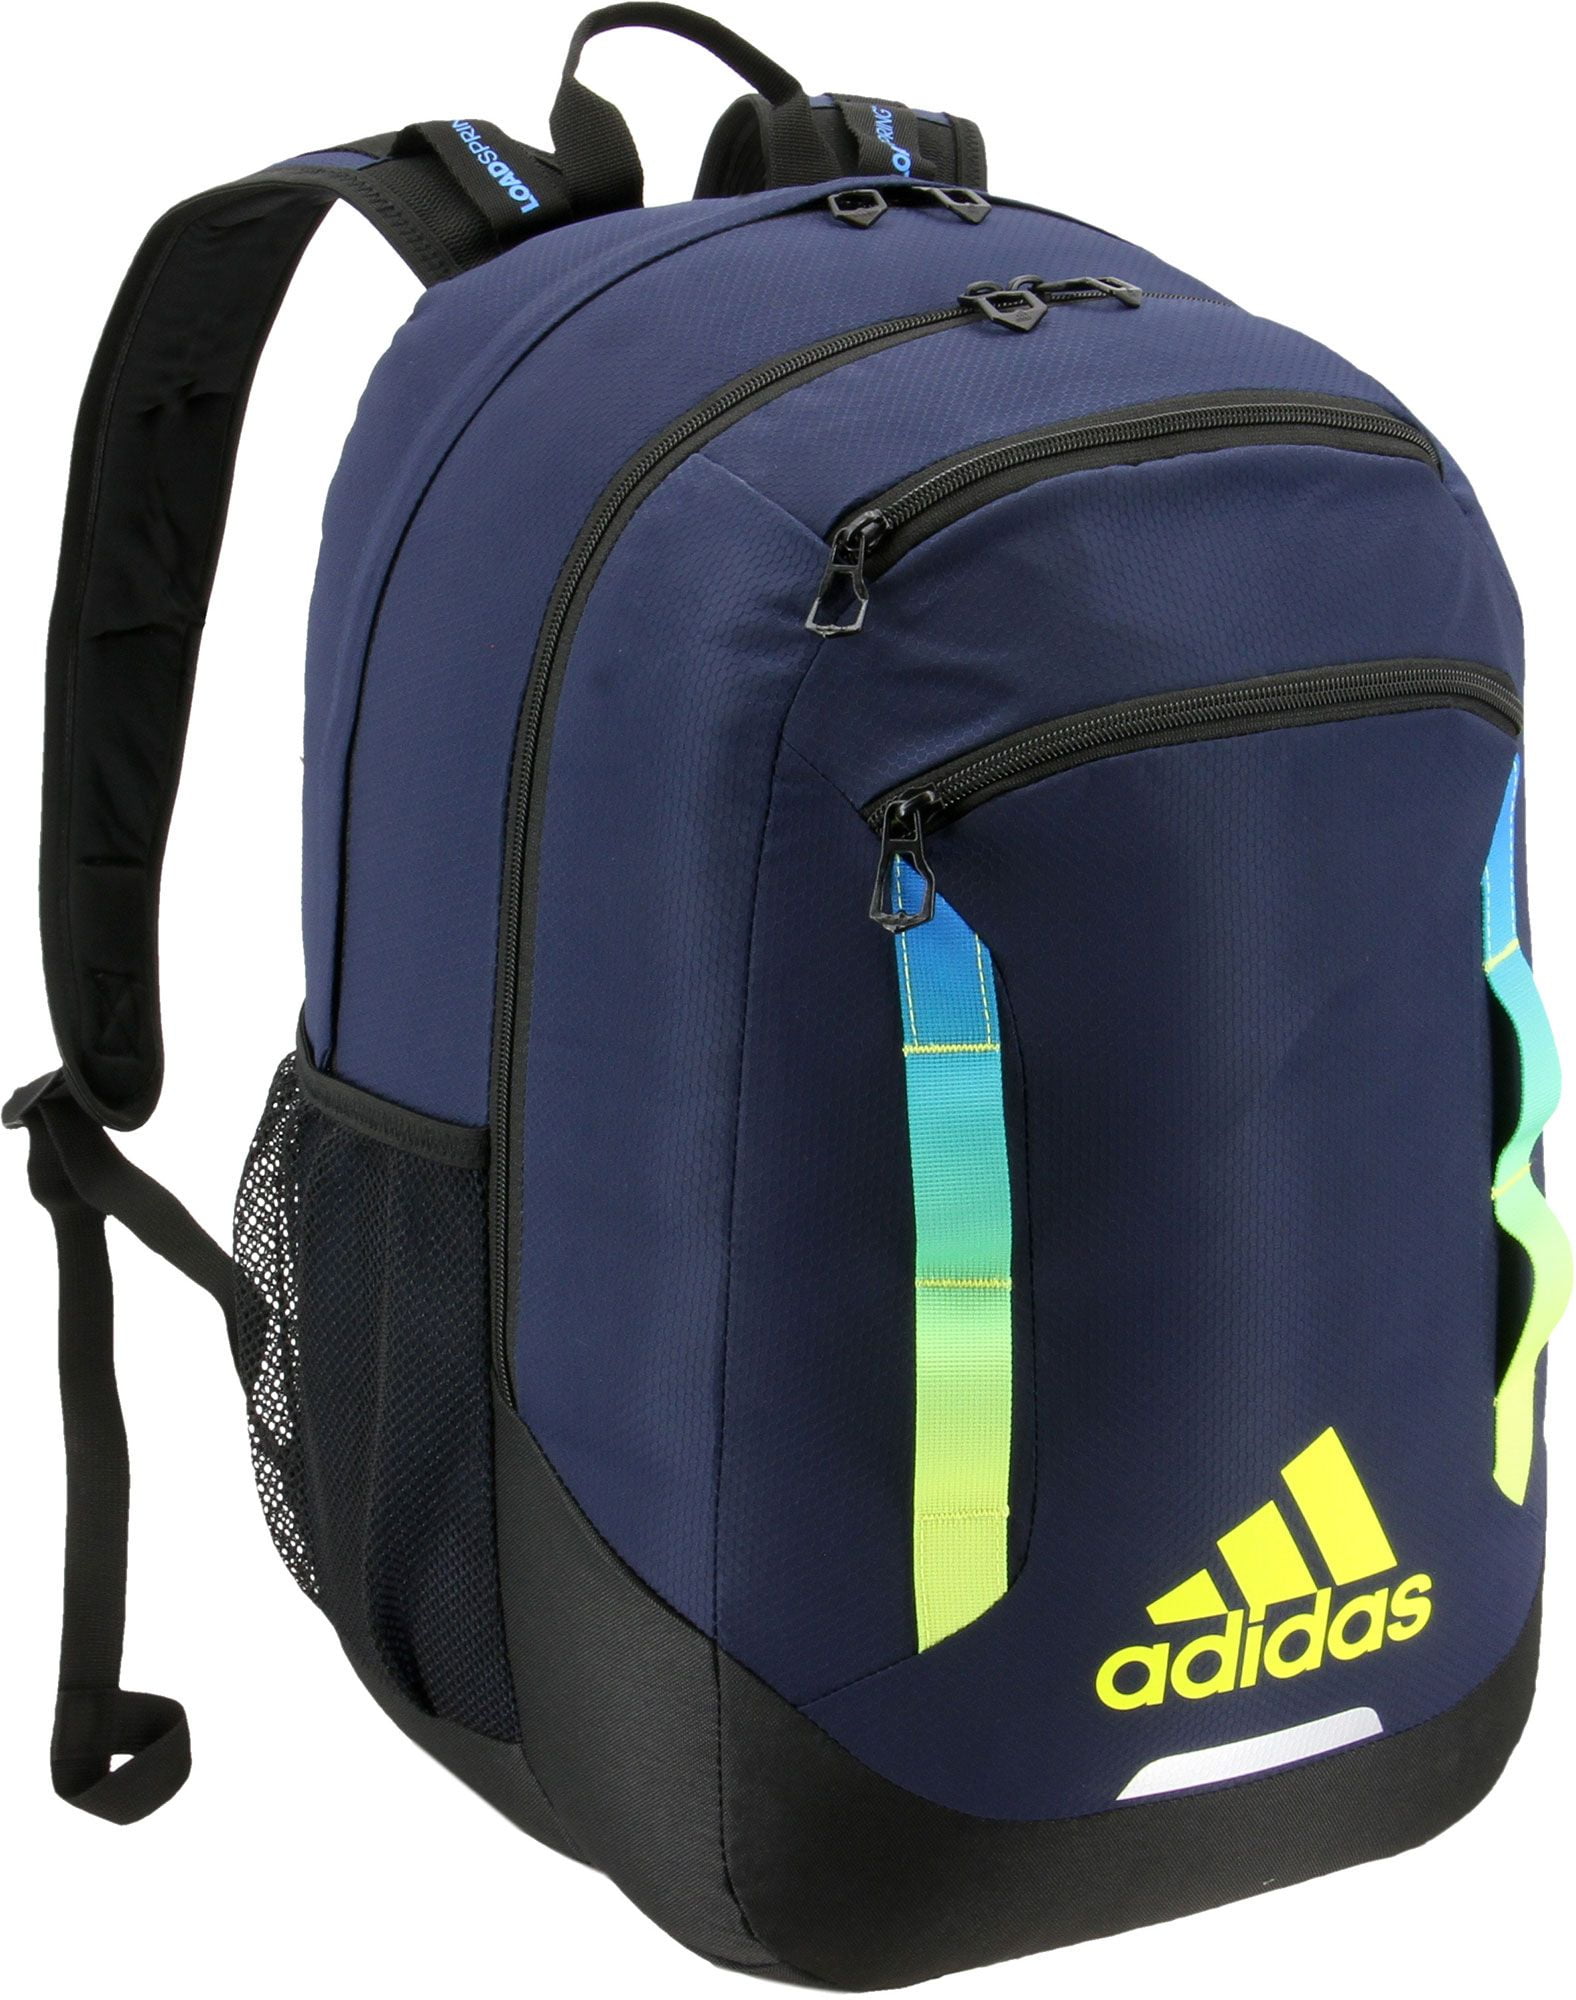 adidas rival backpacks